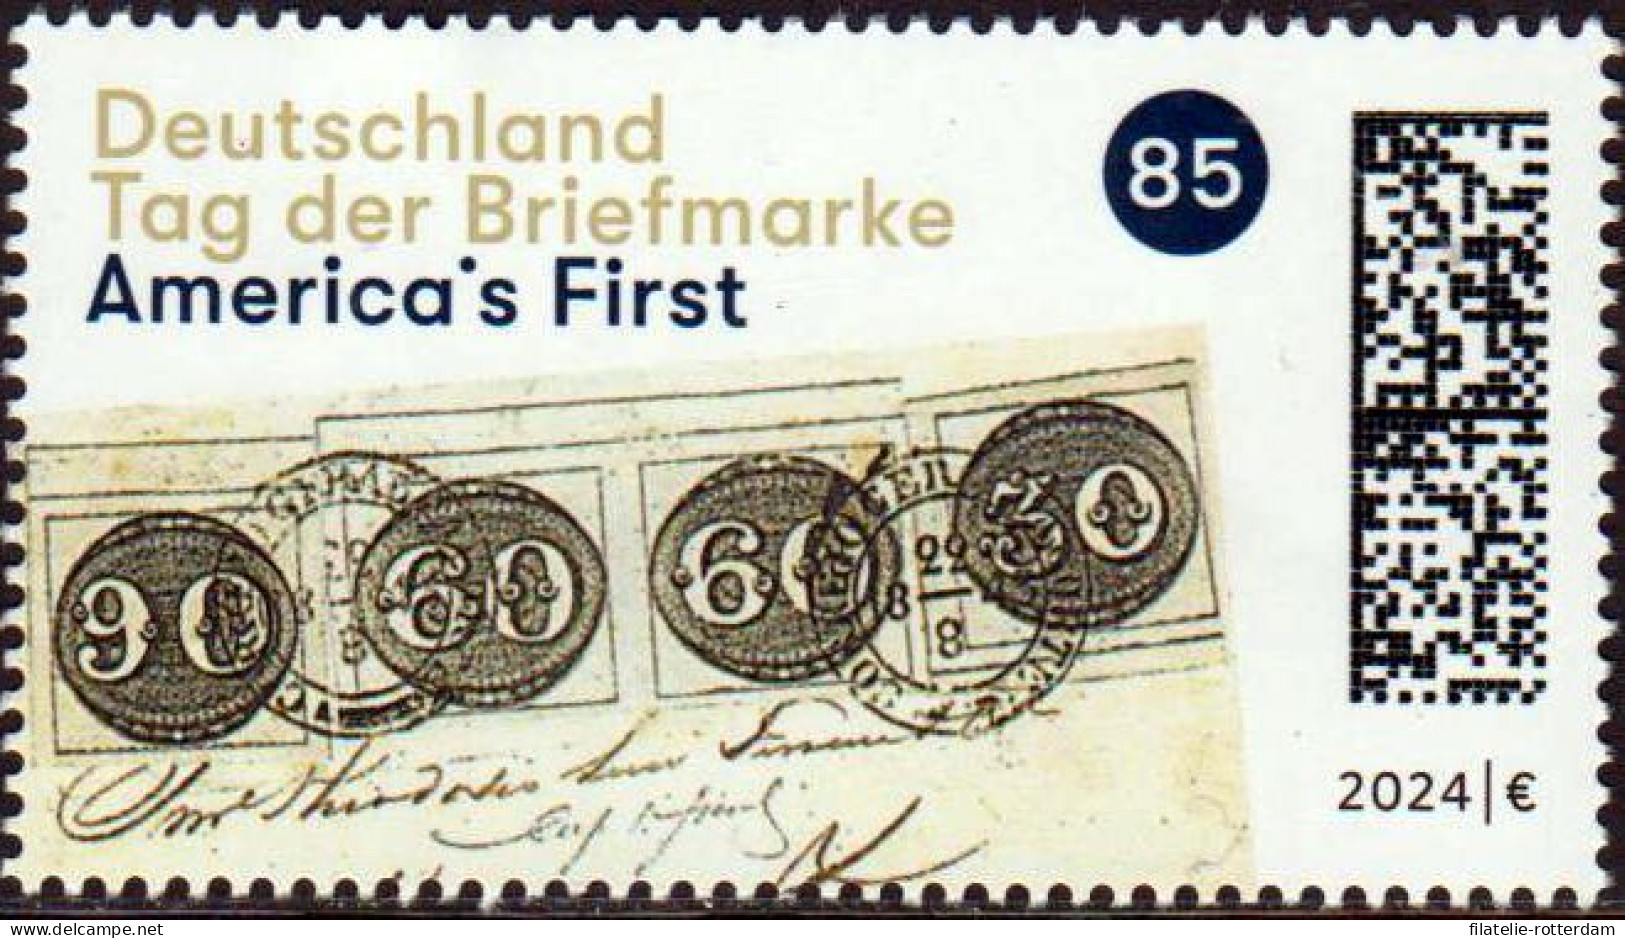 Germany / Duitsland - Postfris / MNH - Stamp Day 2024 - Nuovi